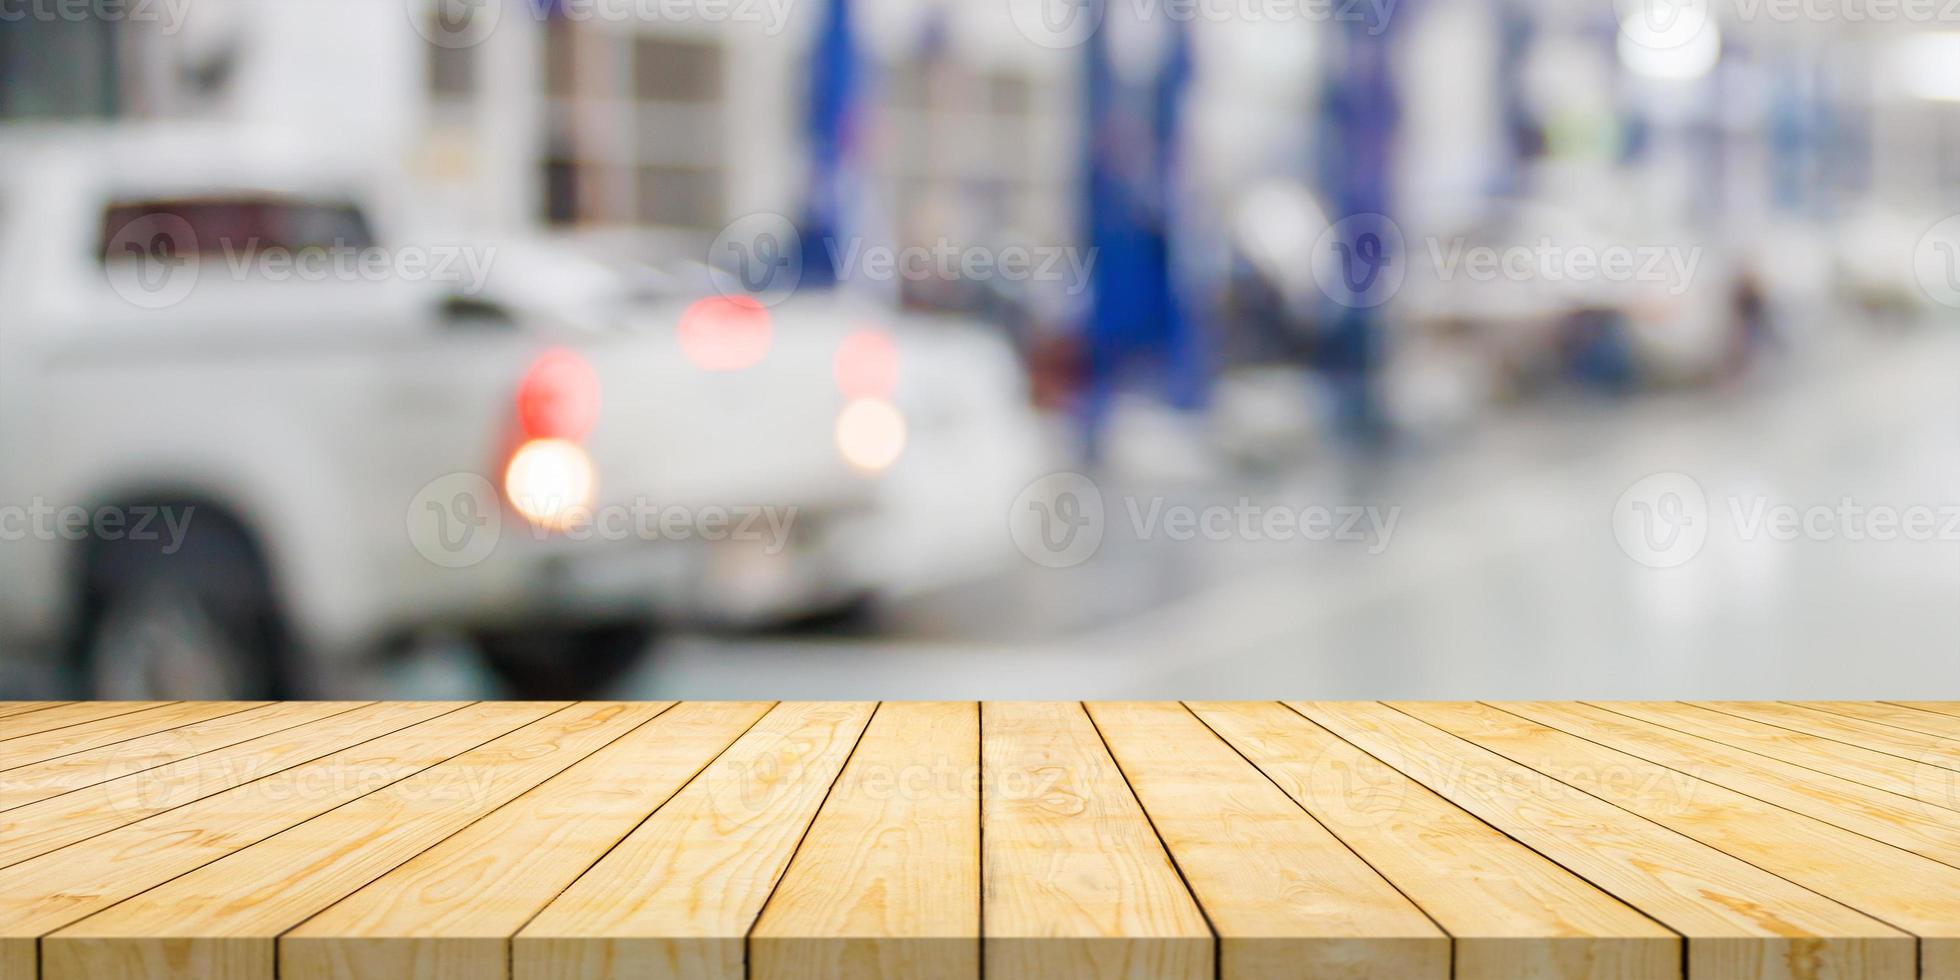 plateau de table en bois vide avec centre de service automobile atelier de réparation automobile arrière-plan flou photo